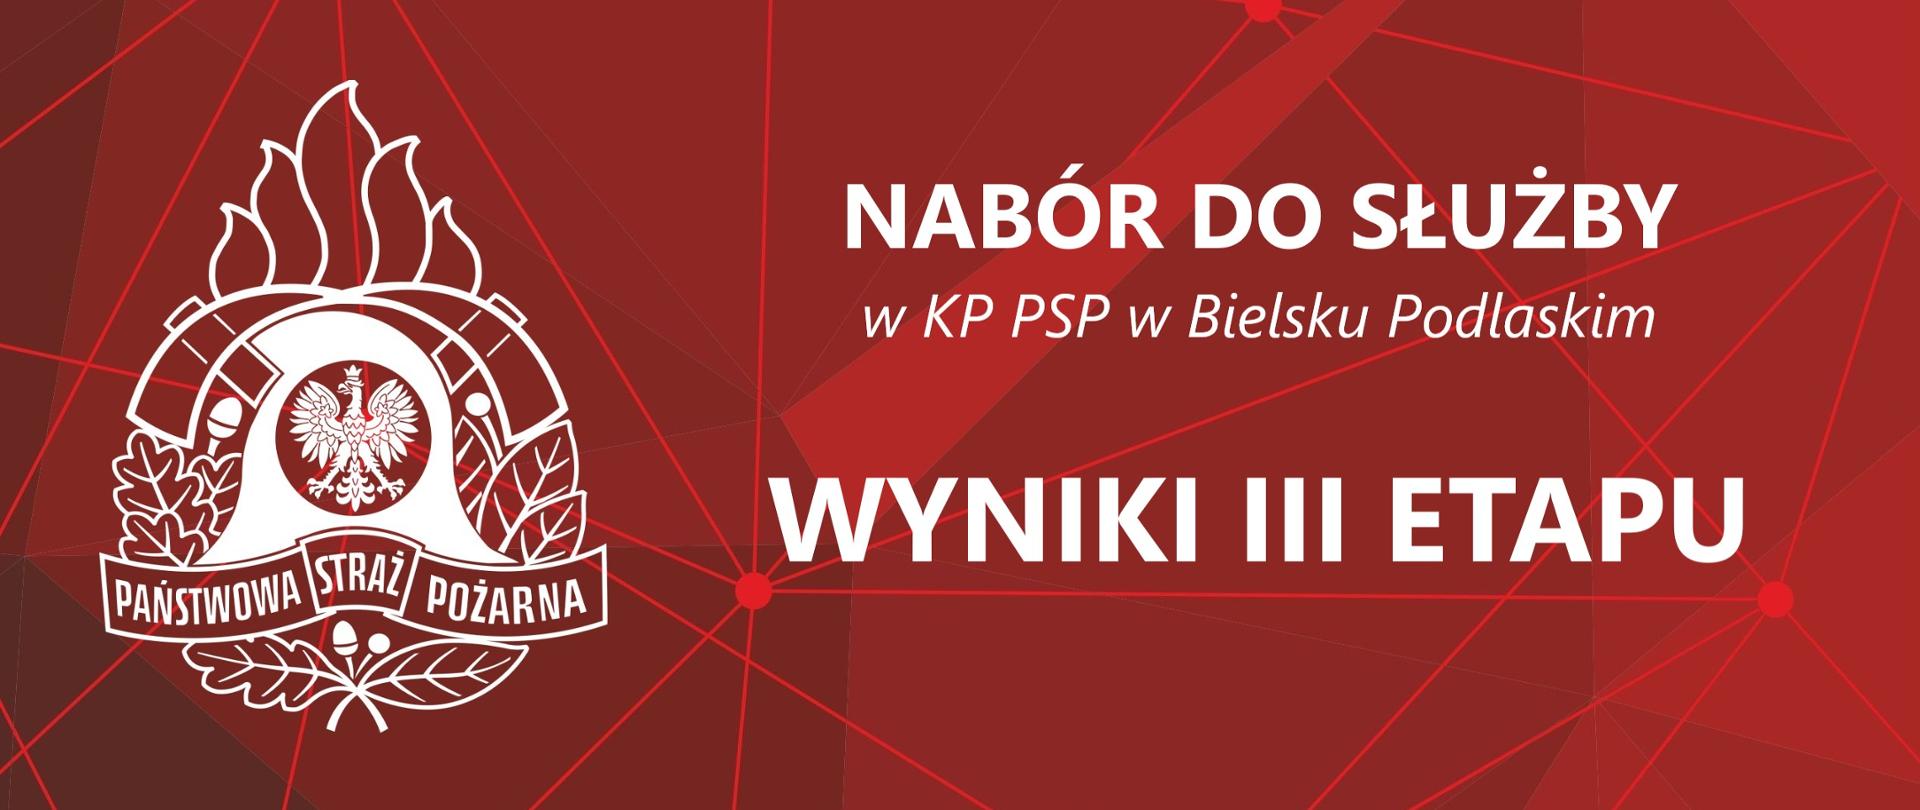 Baner z logo PSP i Napisem: Nabór do służby w KP PSP w Bielsku Podlaskim - Wyniki III etapu